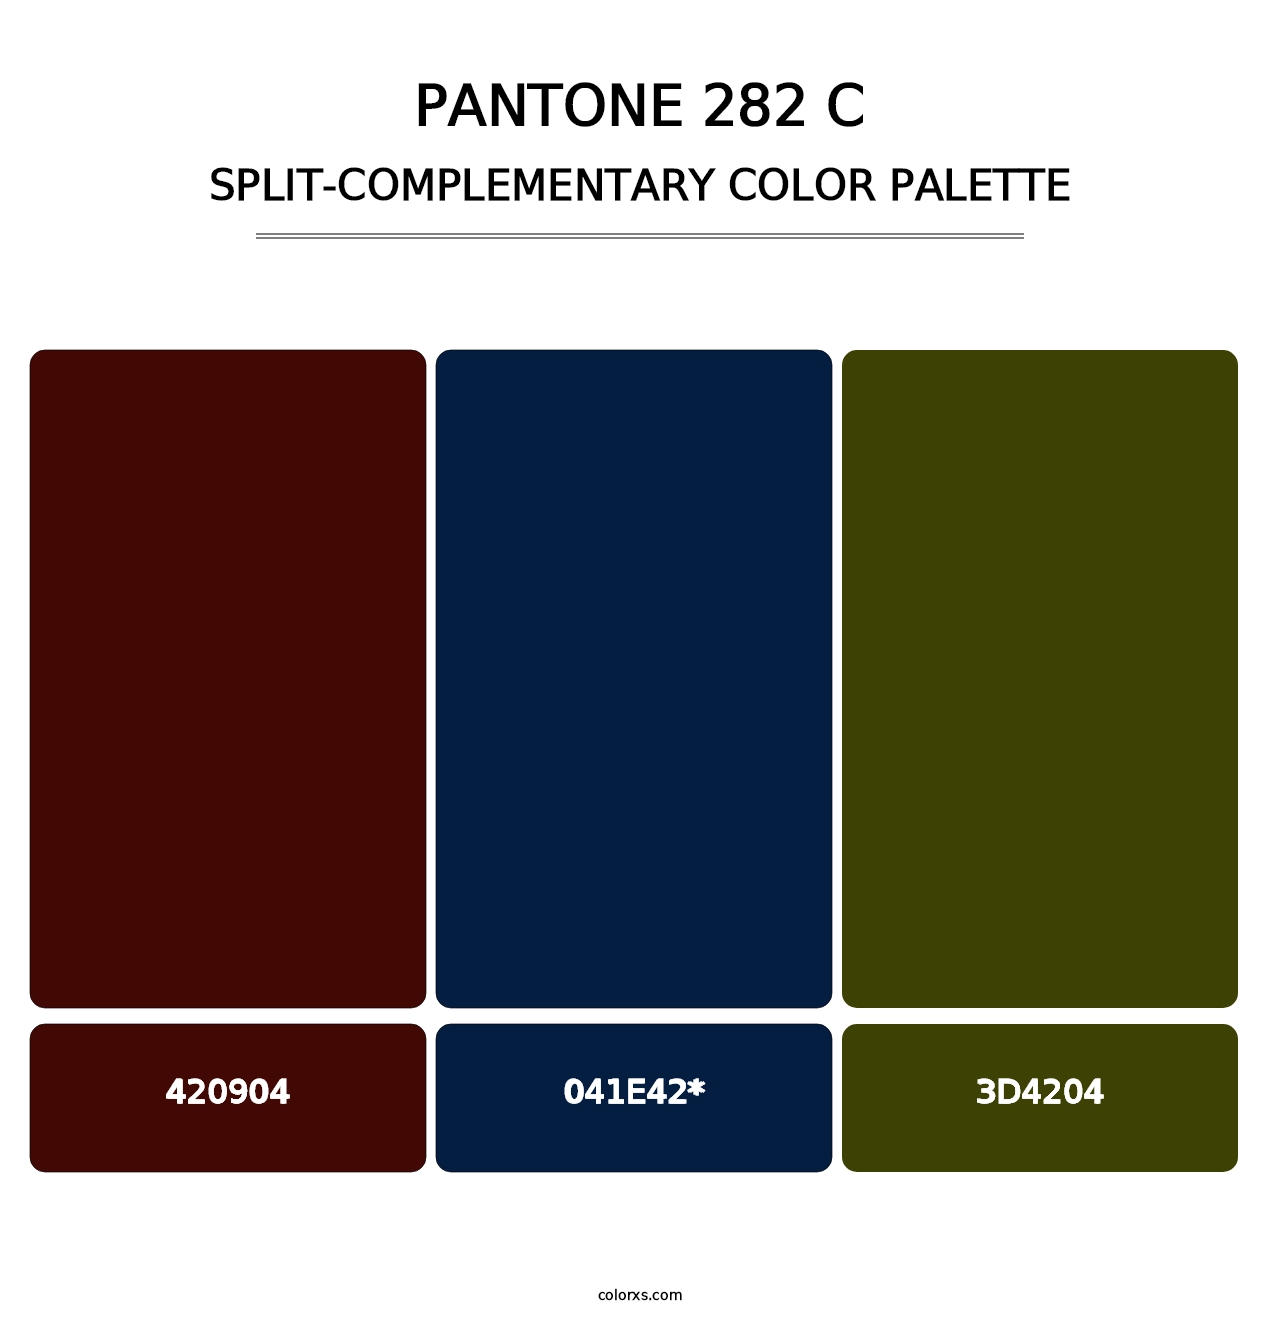 PANTONE 282 C - Split-Complementary Color Palette